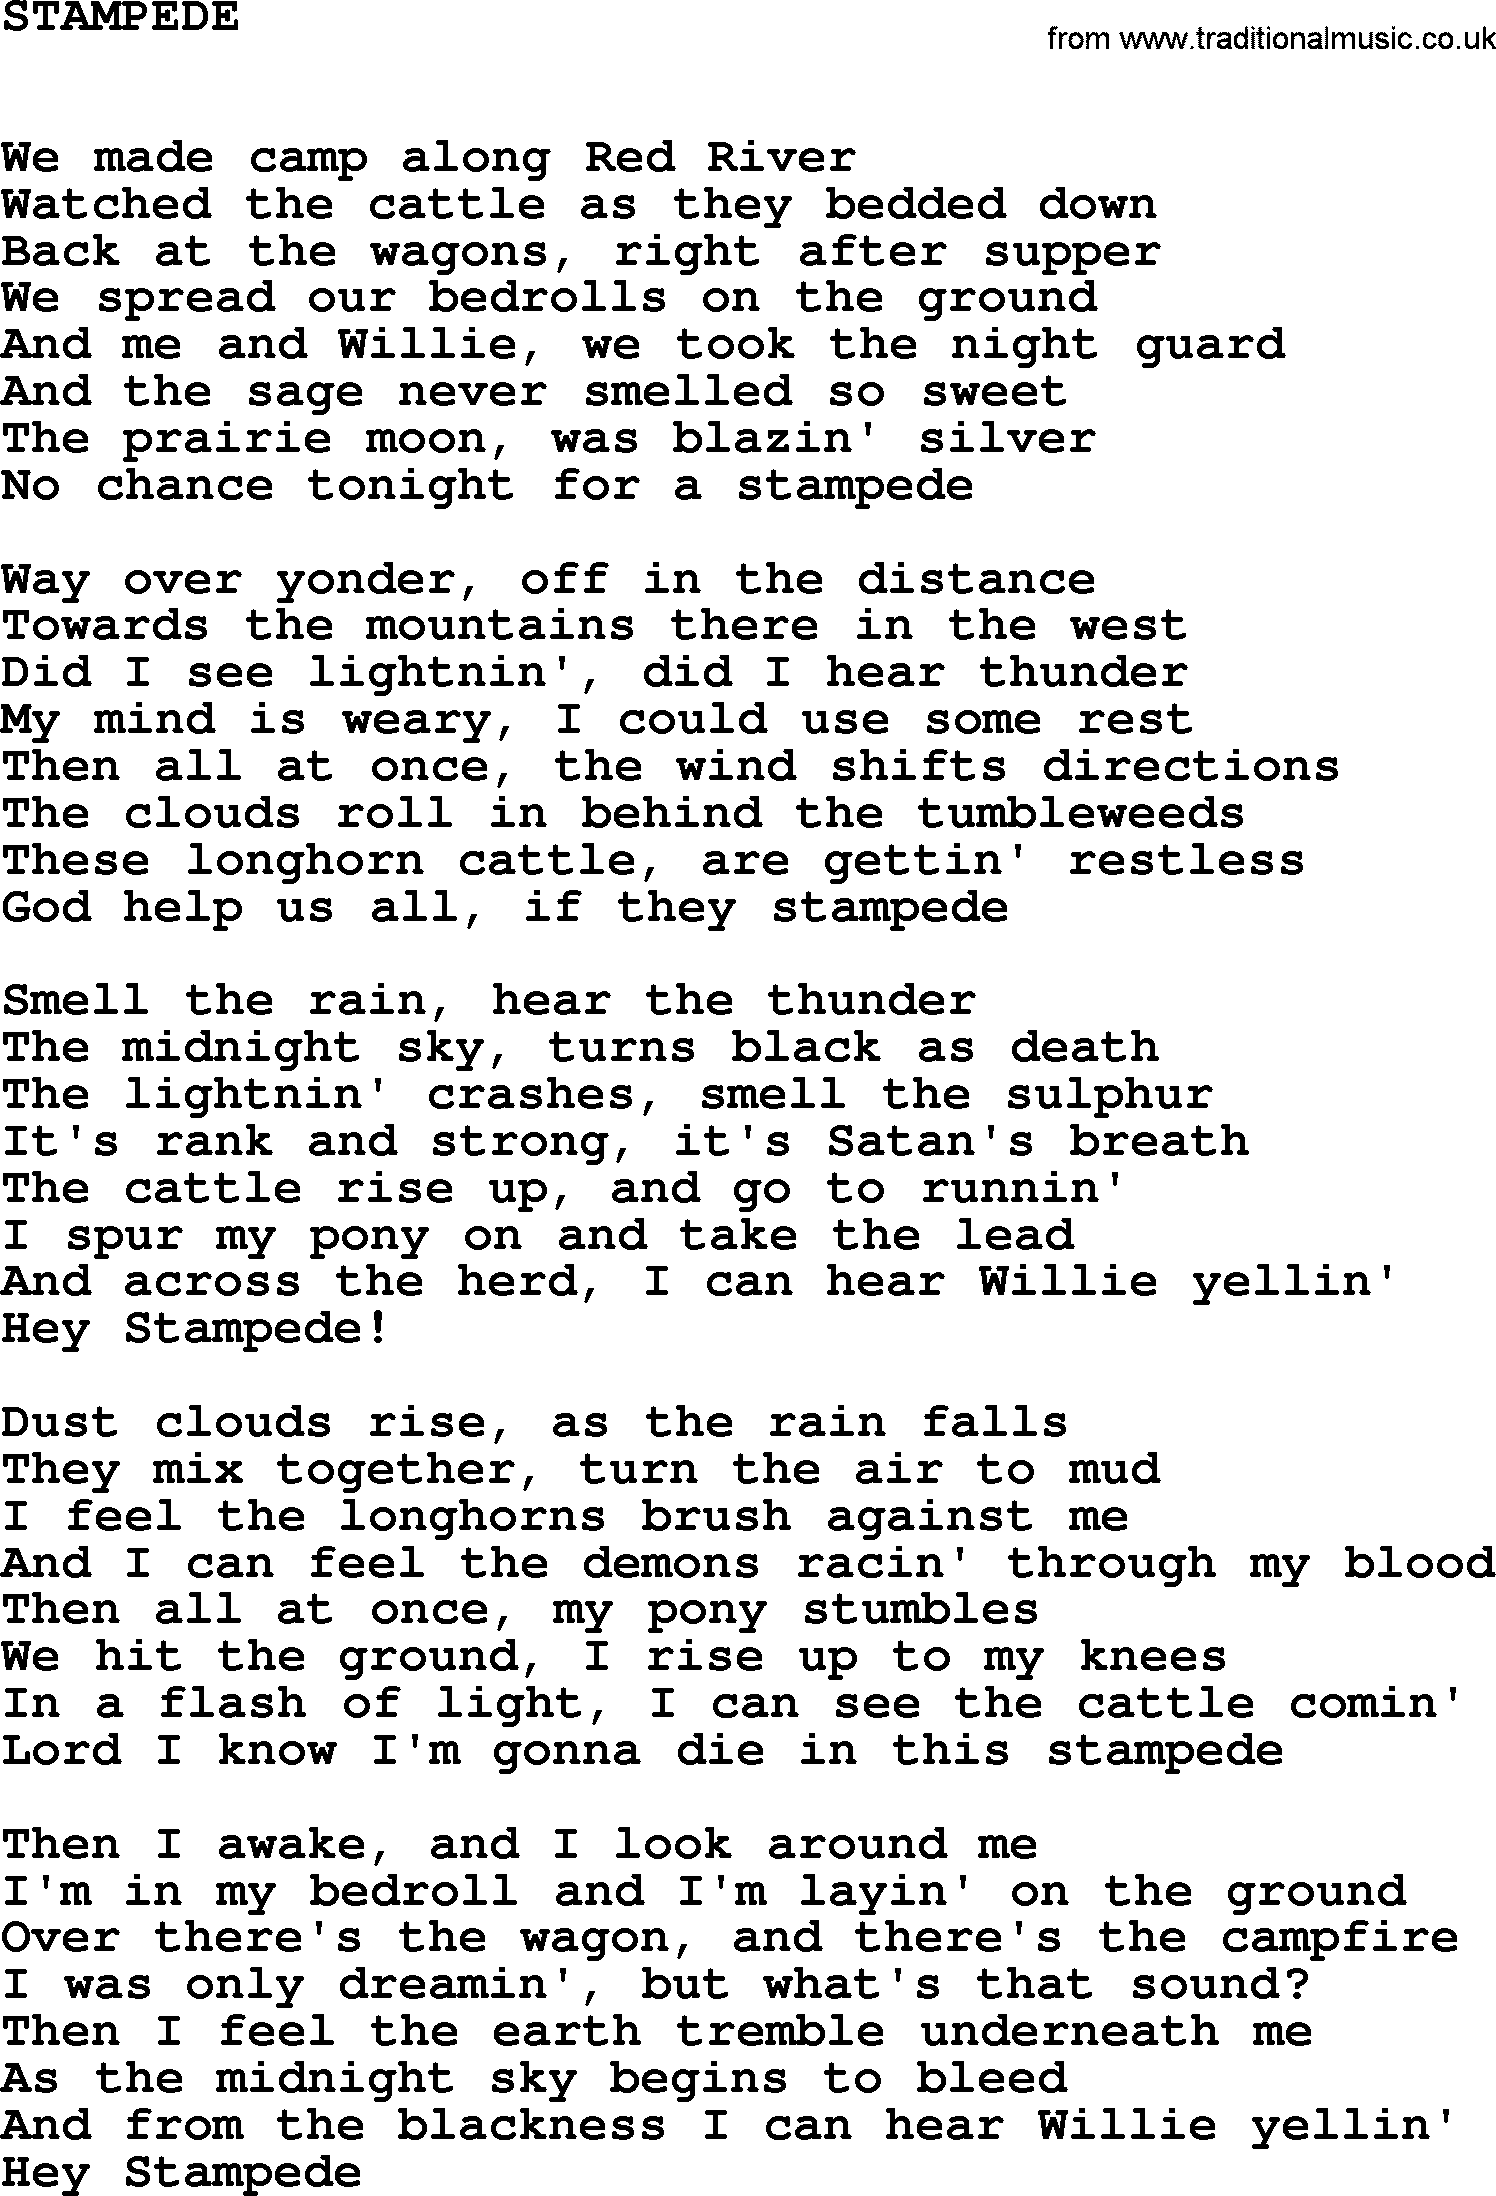 Johnny Cash song Stampede.txt lyrics